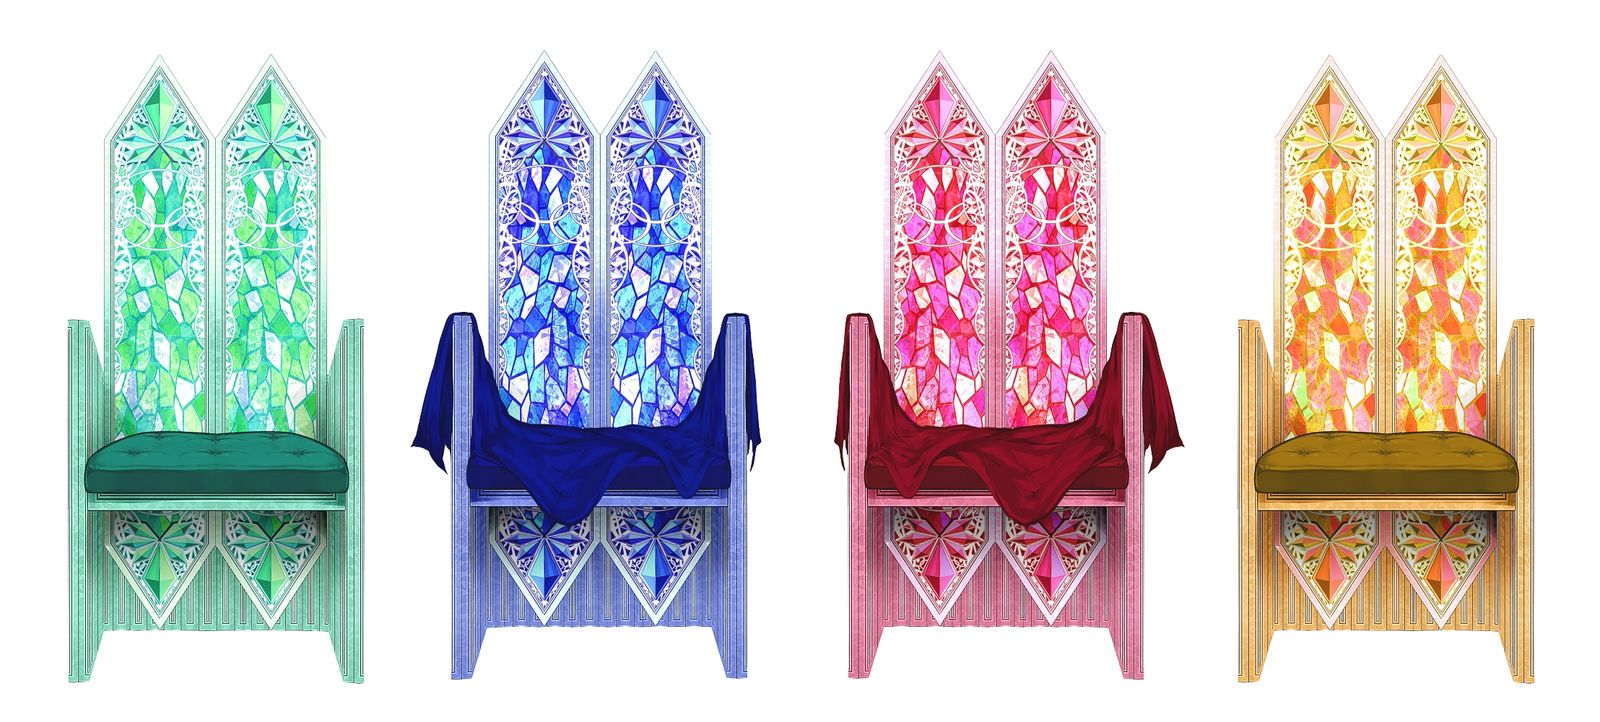 彩色玻璃般的东西和椅子